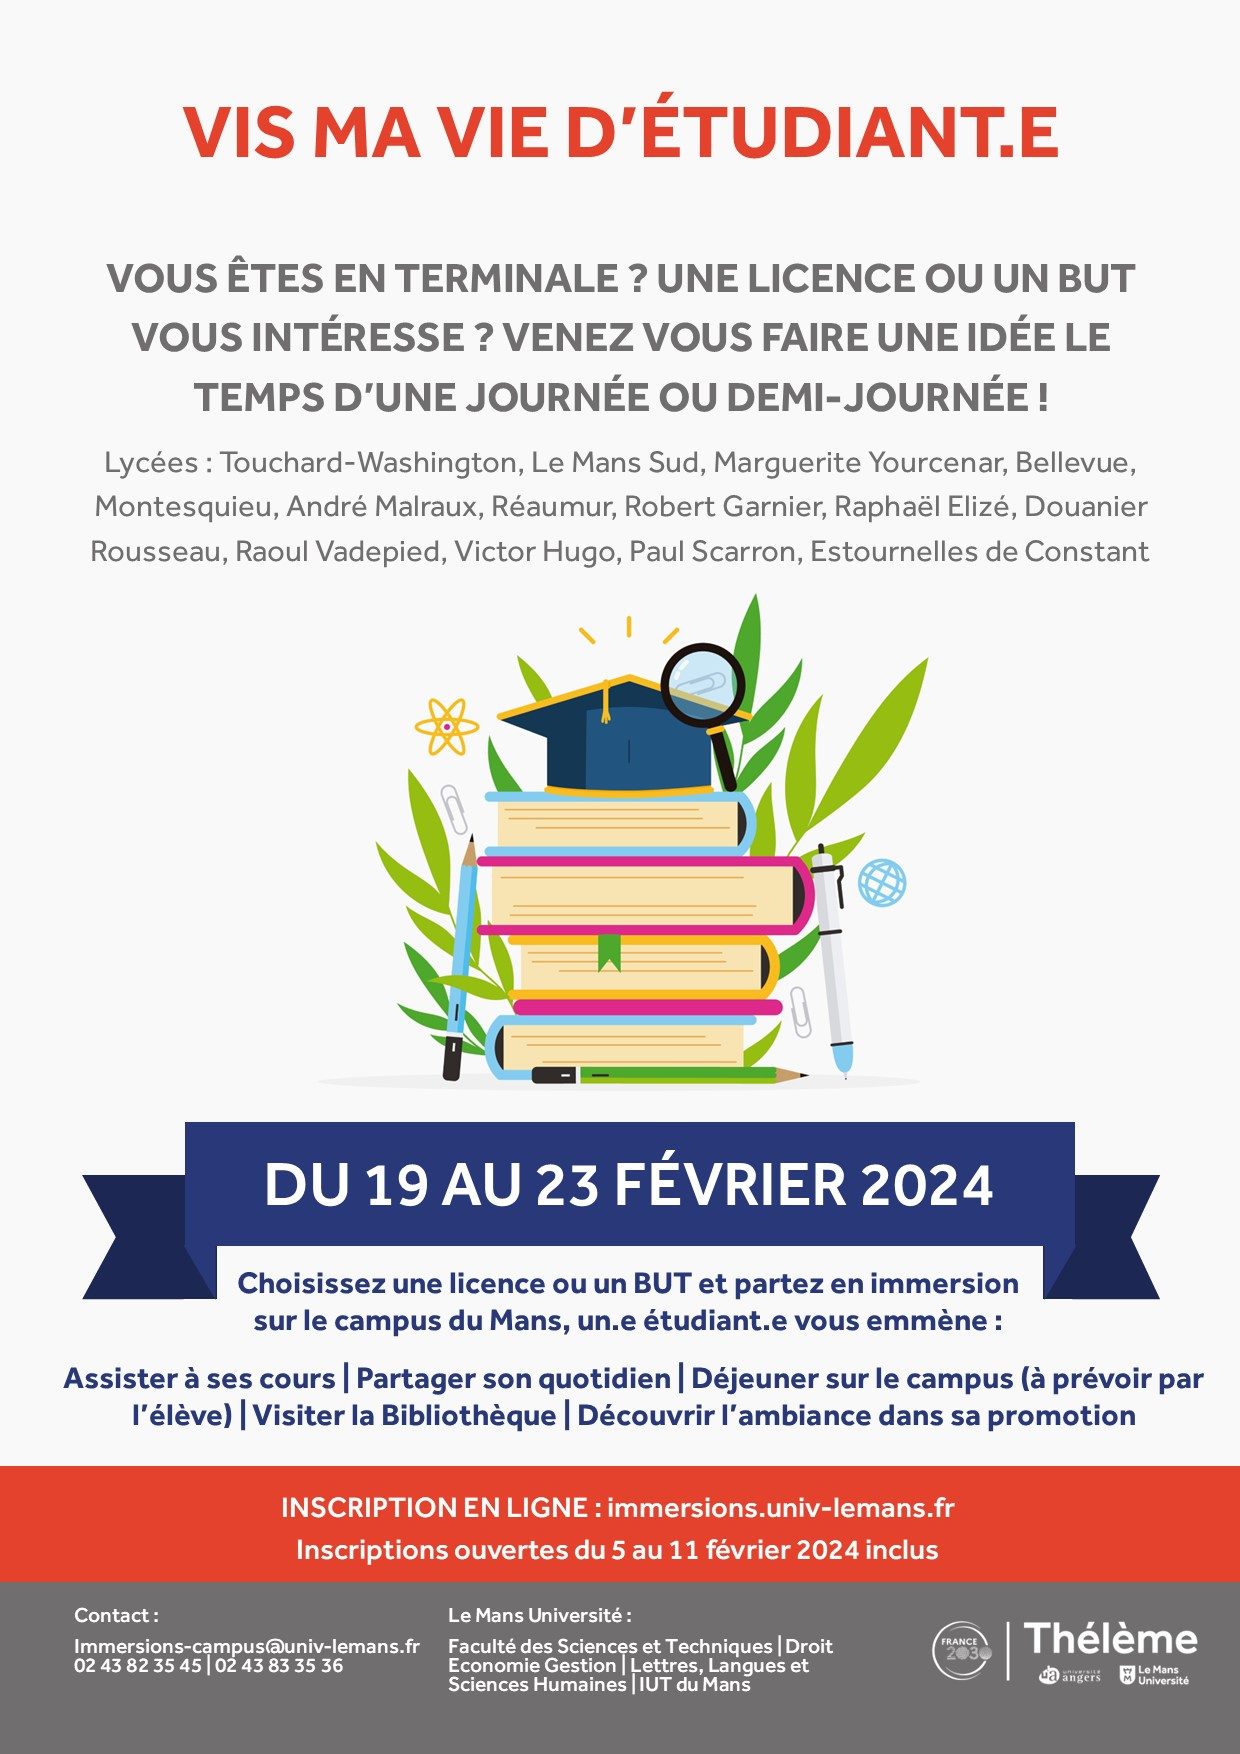 Affiche présentant le dispositif "Vis ma vie d'étudiants" qui aura lieu du 19 au 23 février et destiné aux terminales qui sont intéressés par des études à l'université du Mans.